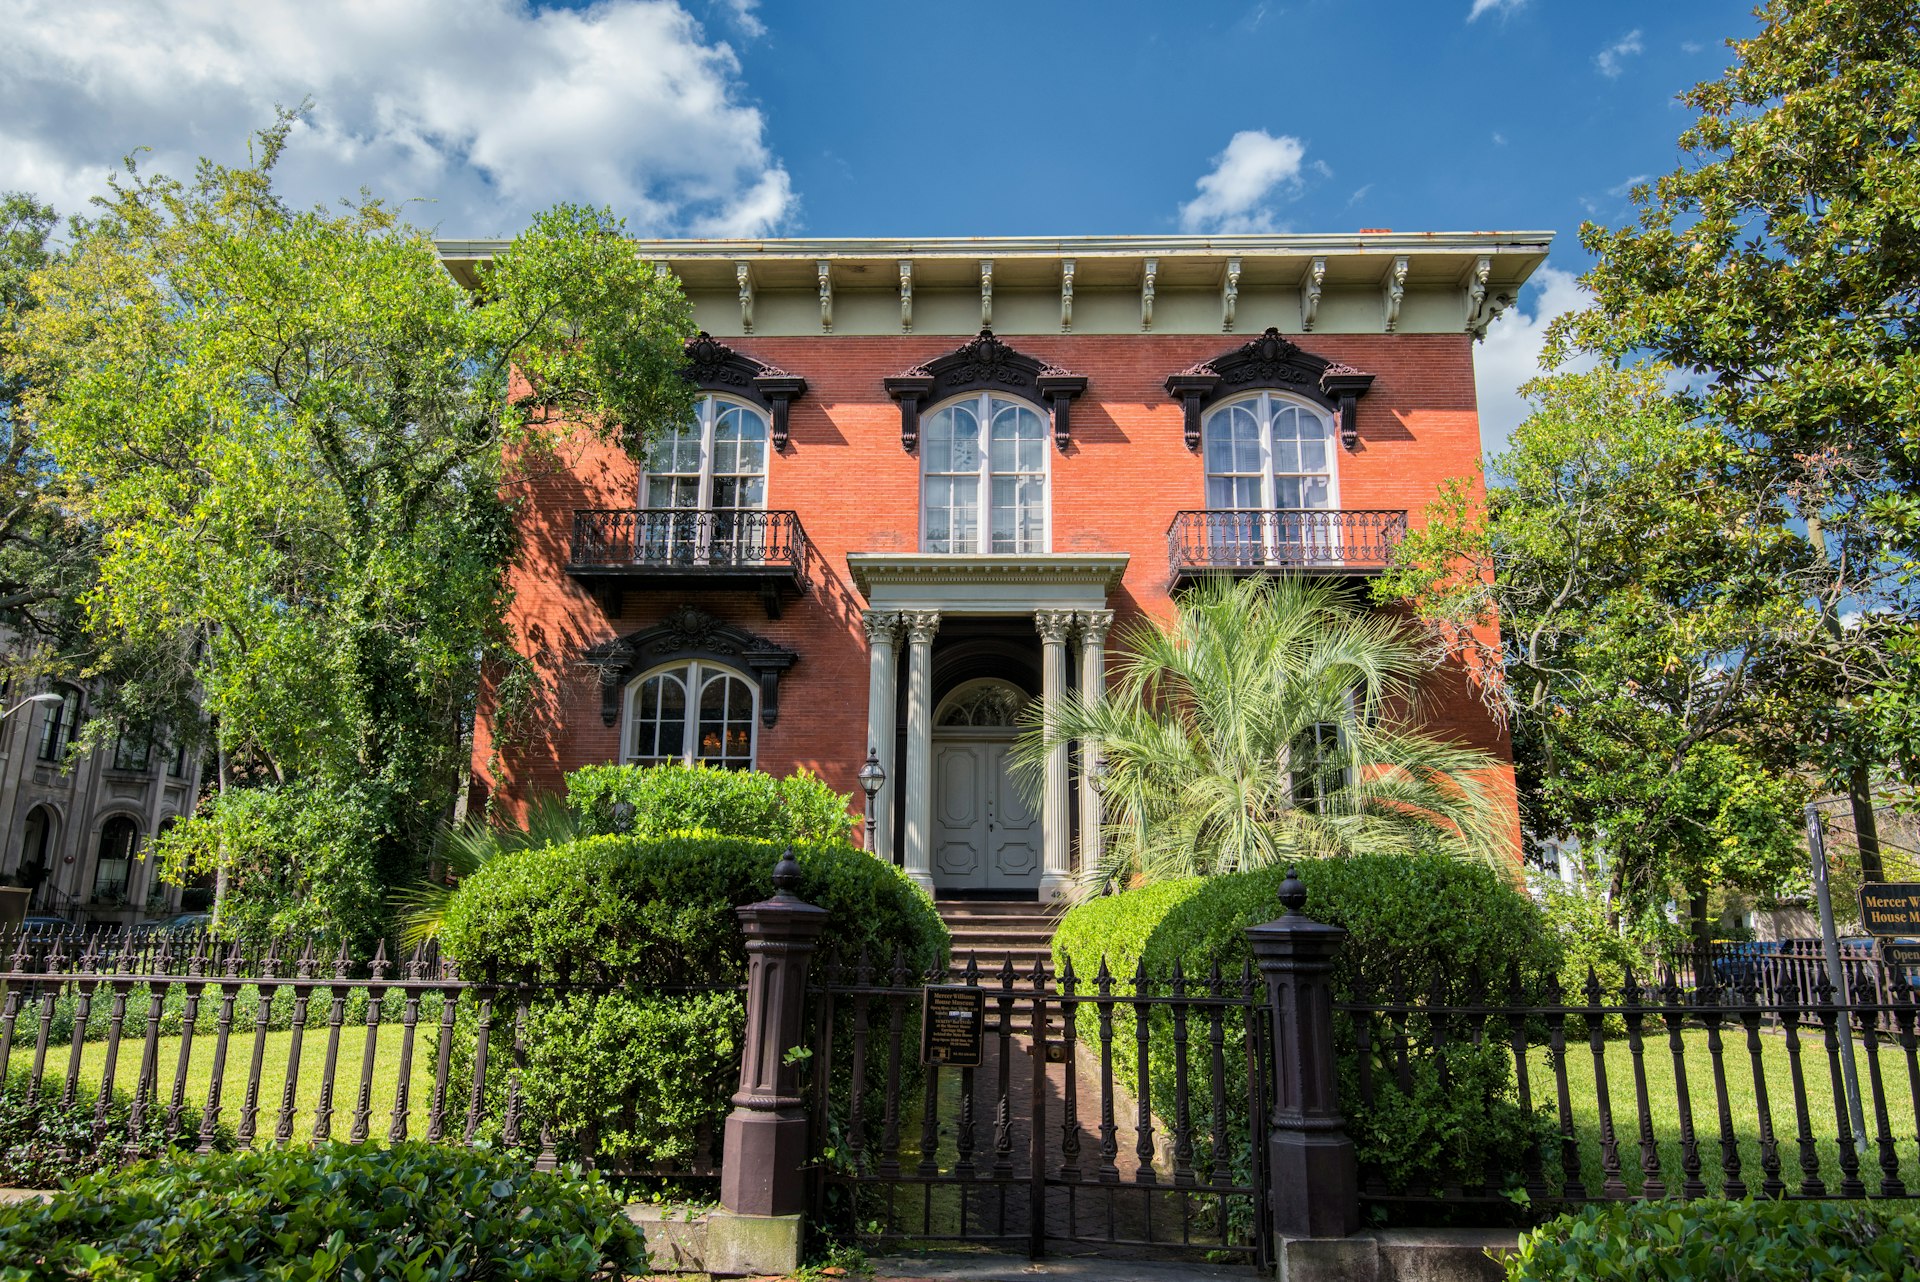 A red brick house with columns in Savannah, Georgia